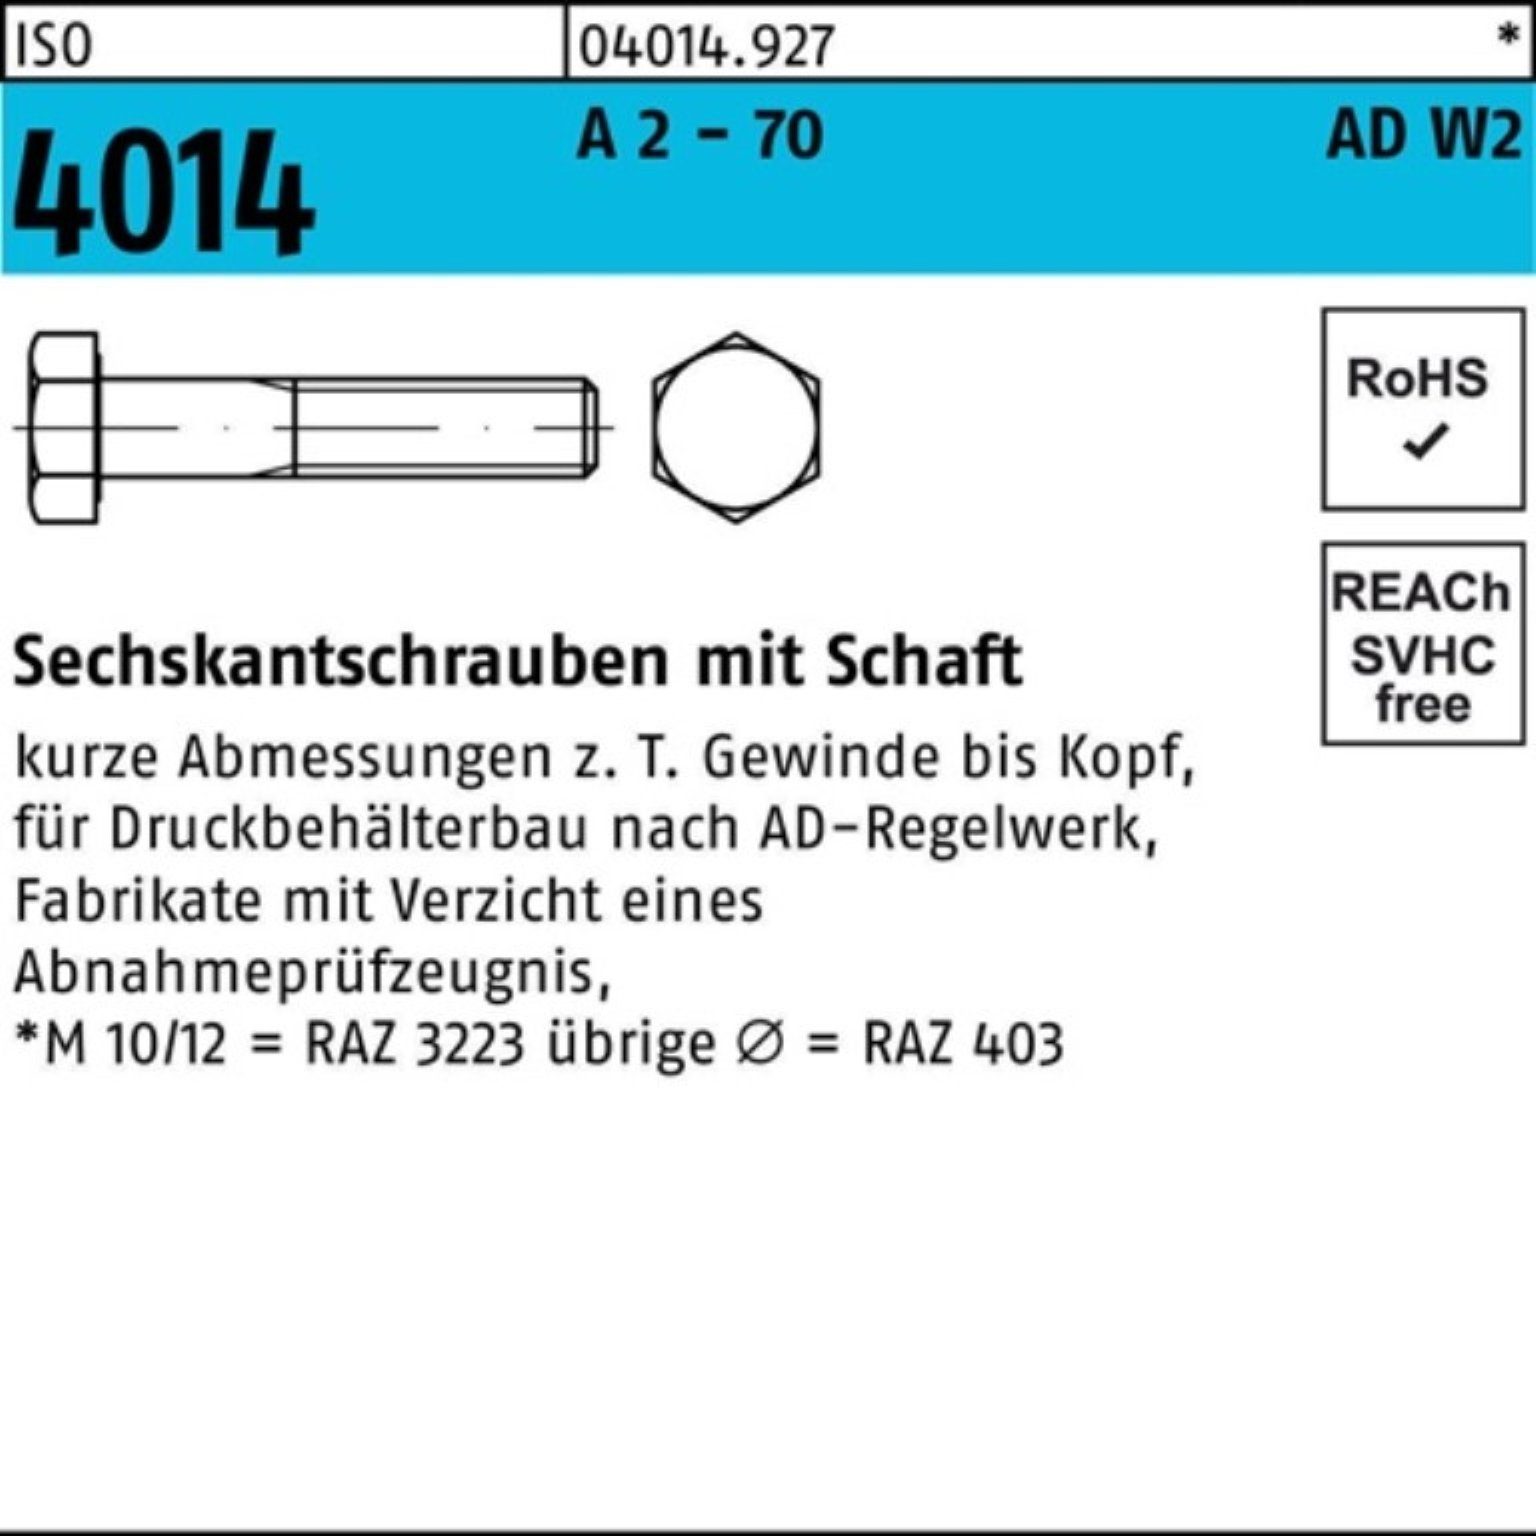 Bufab Sechskantschraube 100er Pack - 170 Schaft 4014 M16x 70 Sechskantschraube 1 AD-W2 ISO A 2